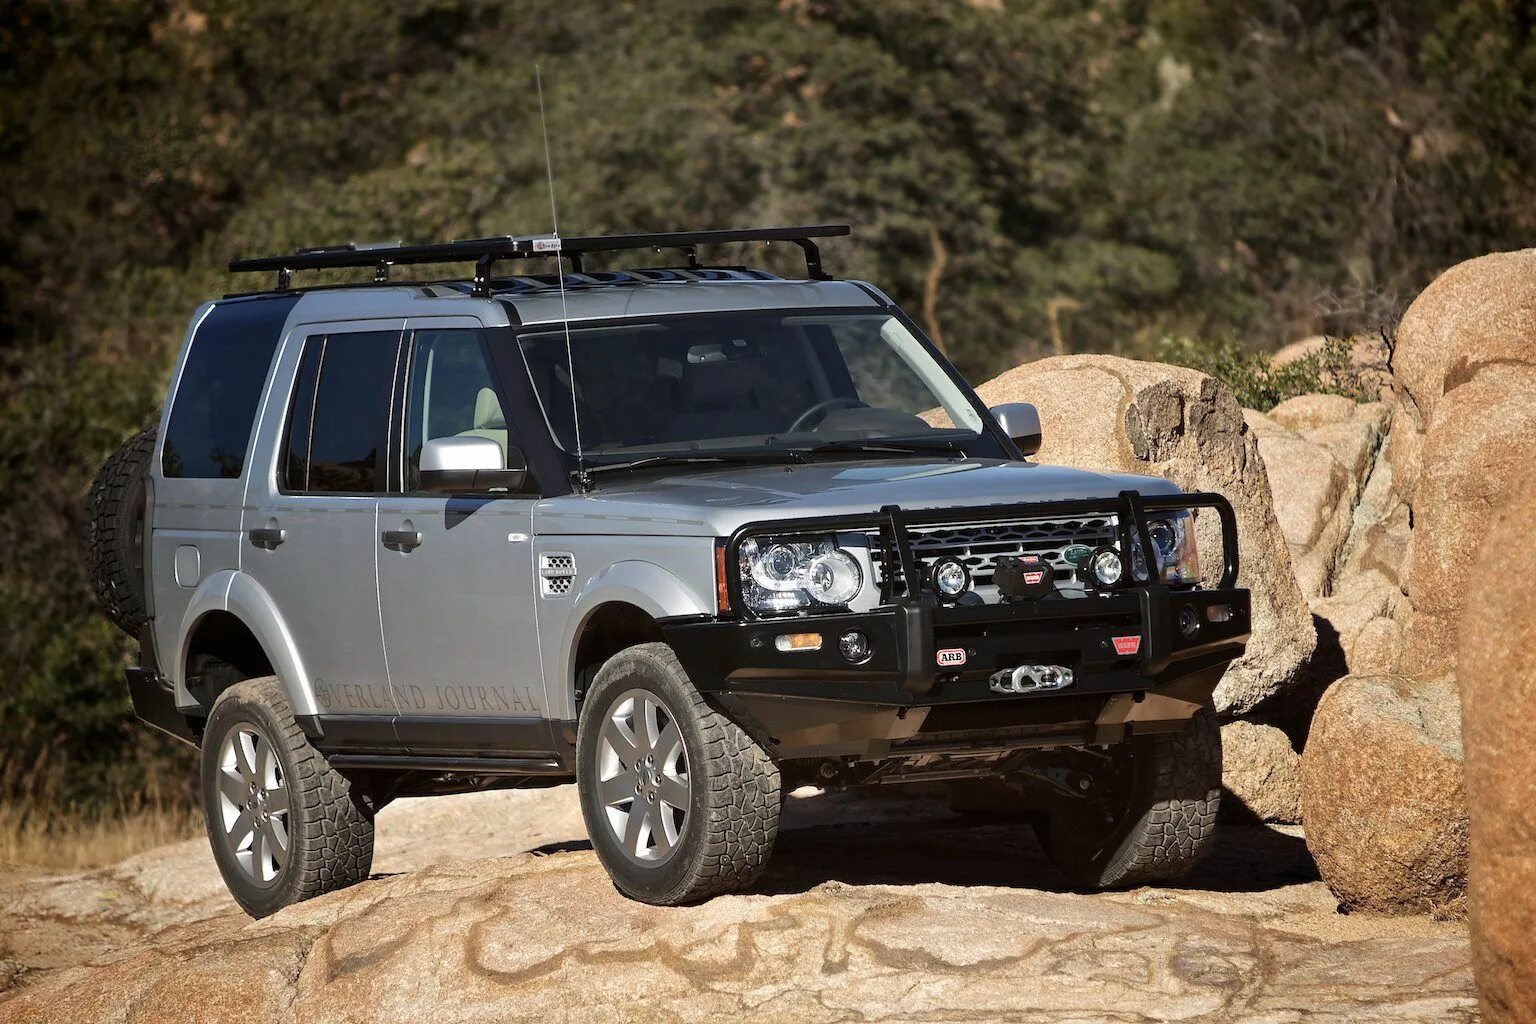 Ленд Ровер Дискавери 4. Ленд Ровер Дискавери 4 Expedition. Land Rover Discovery 3 Expedition. Land Rover lr3/Discovery 3. Установить дискавери